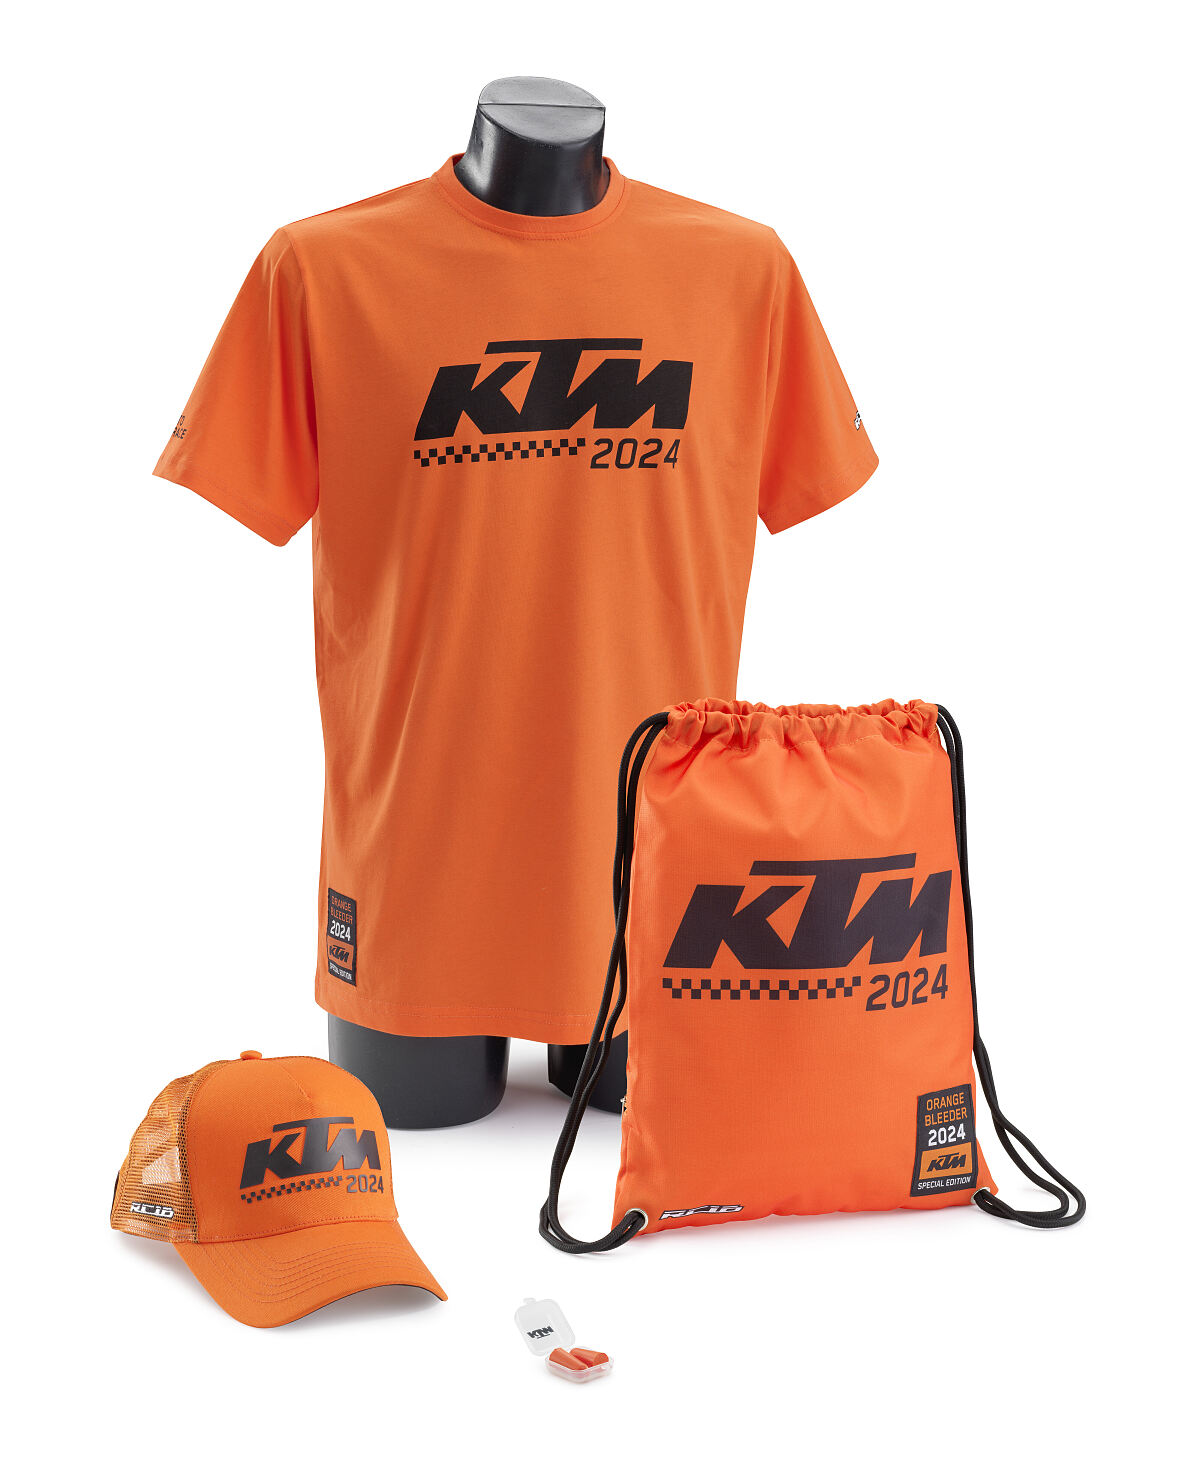 KTM MotoGP Fan Package 2024